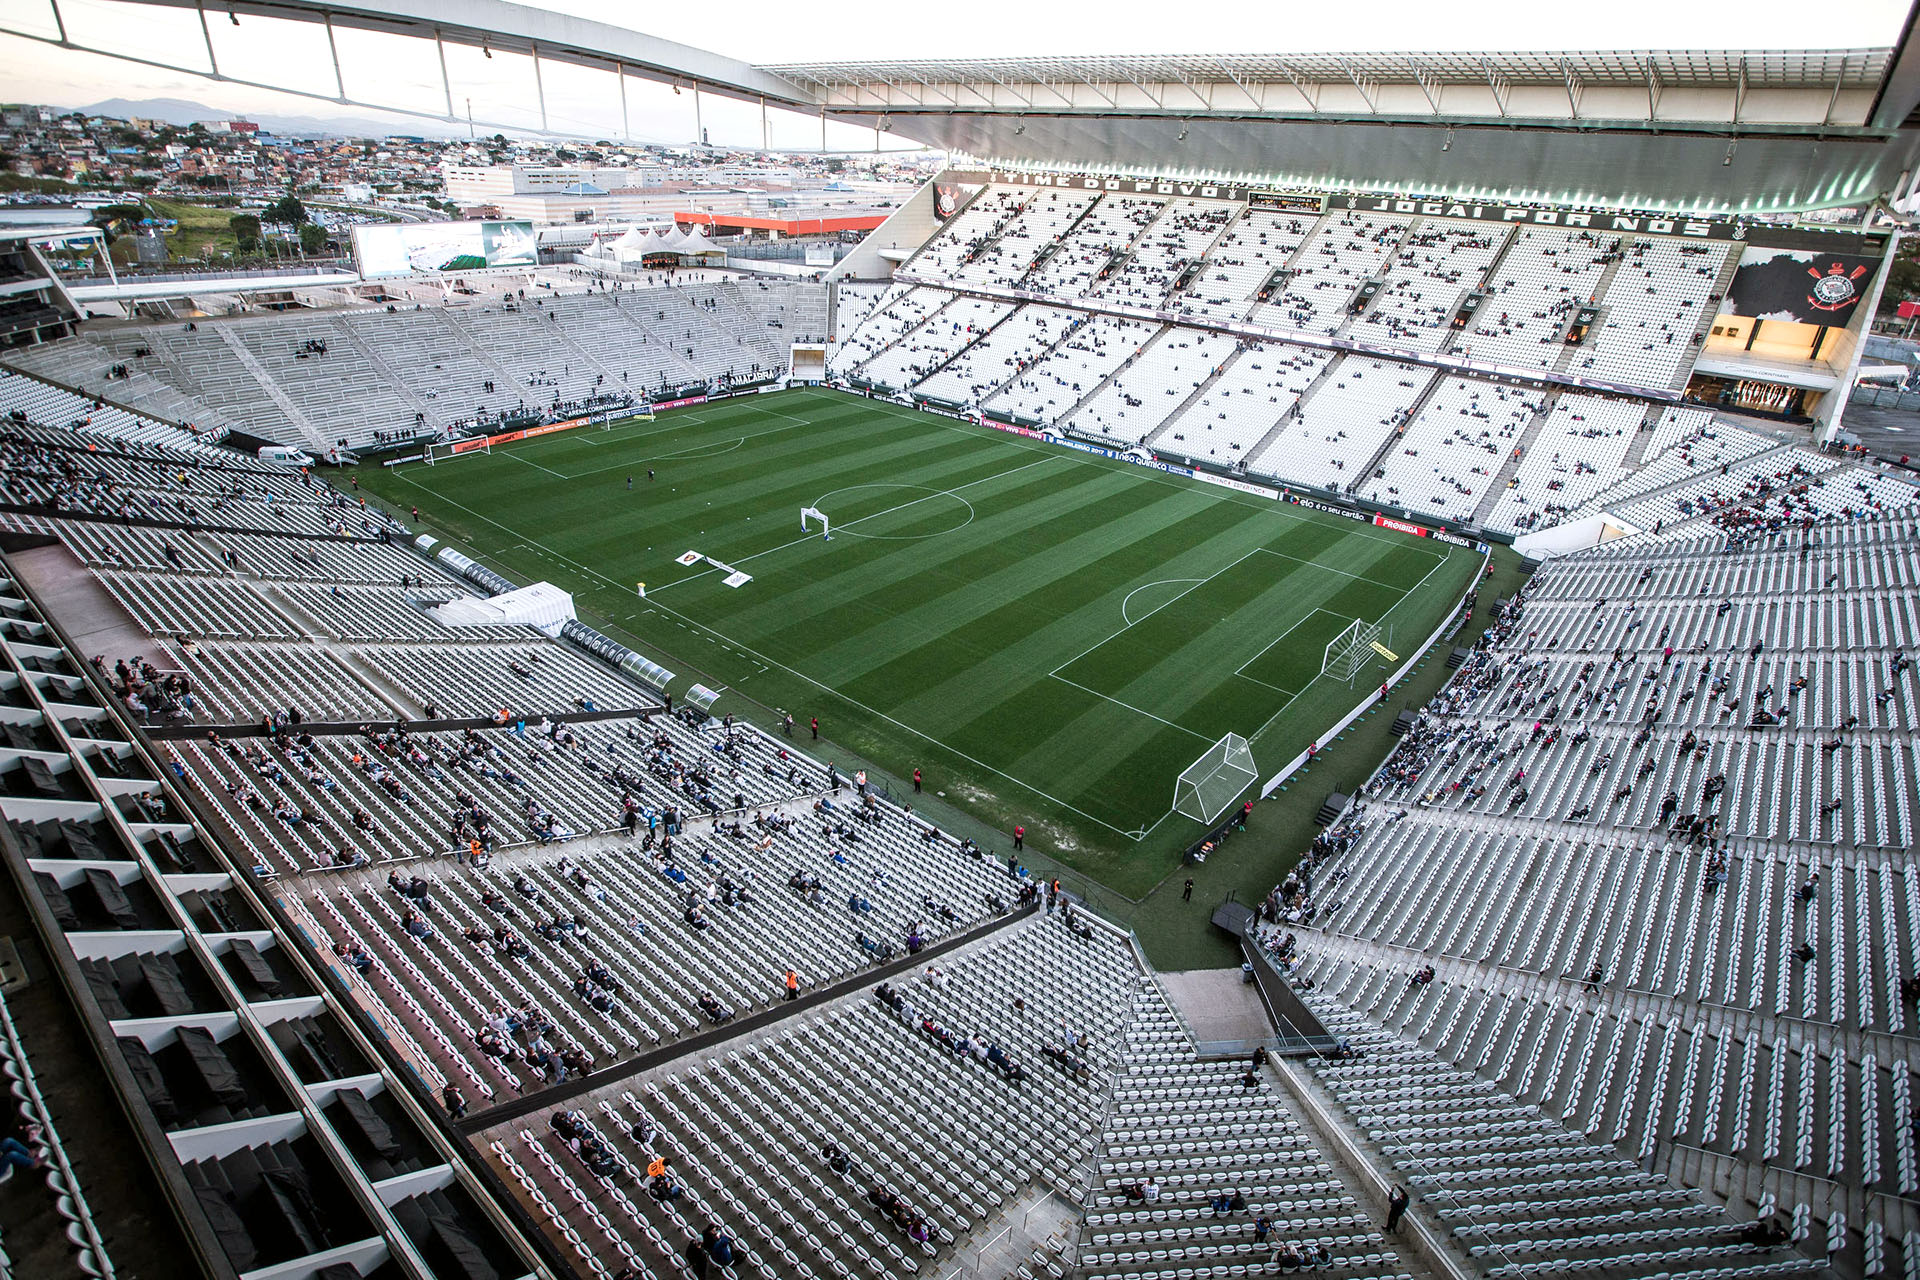 Arena Corinthians, popularmente conhecida como "Itaquerão".